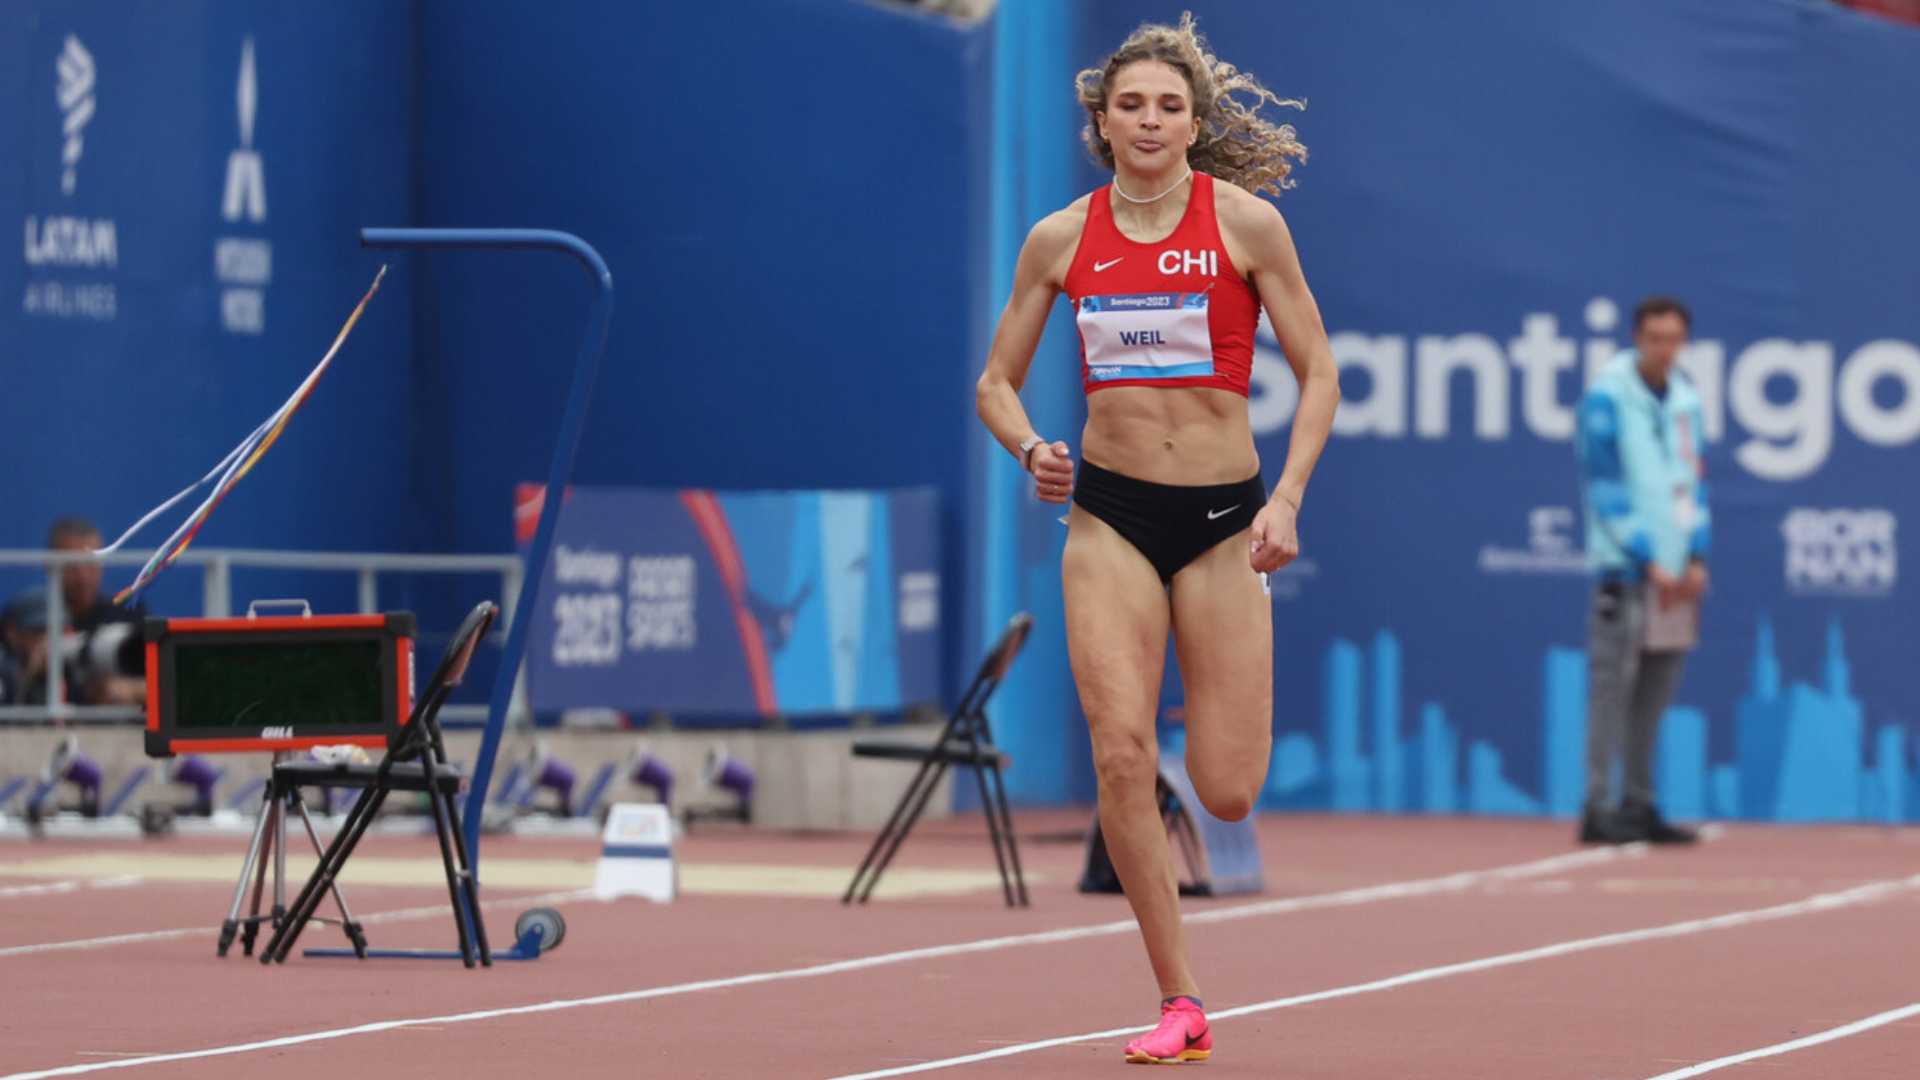 La chilena Martina Weil avanza con el mejor tiempo a la final de los 400 metros